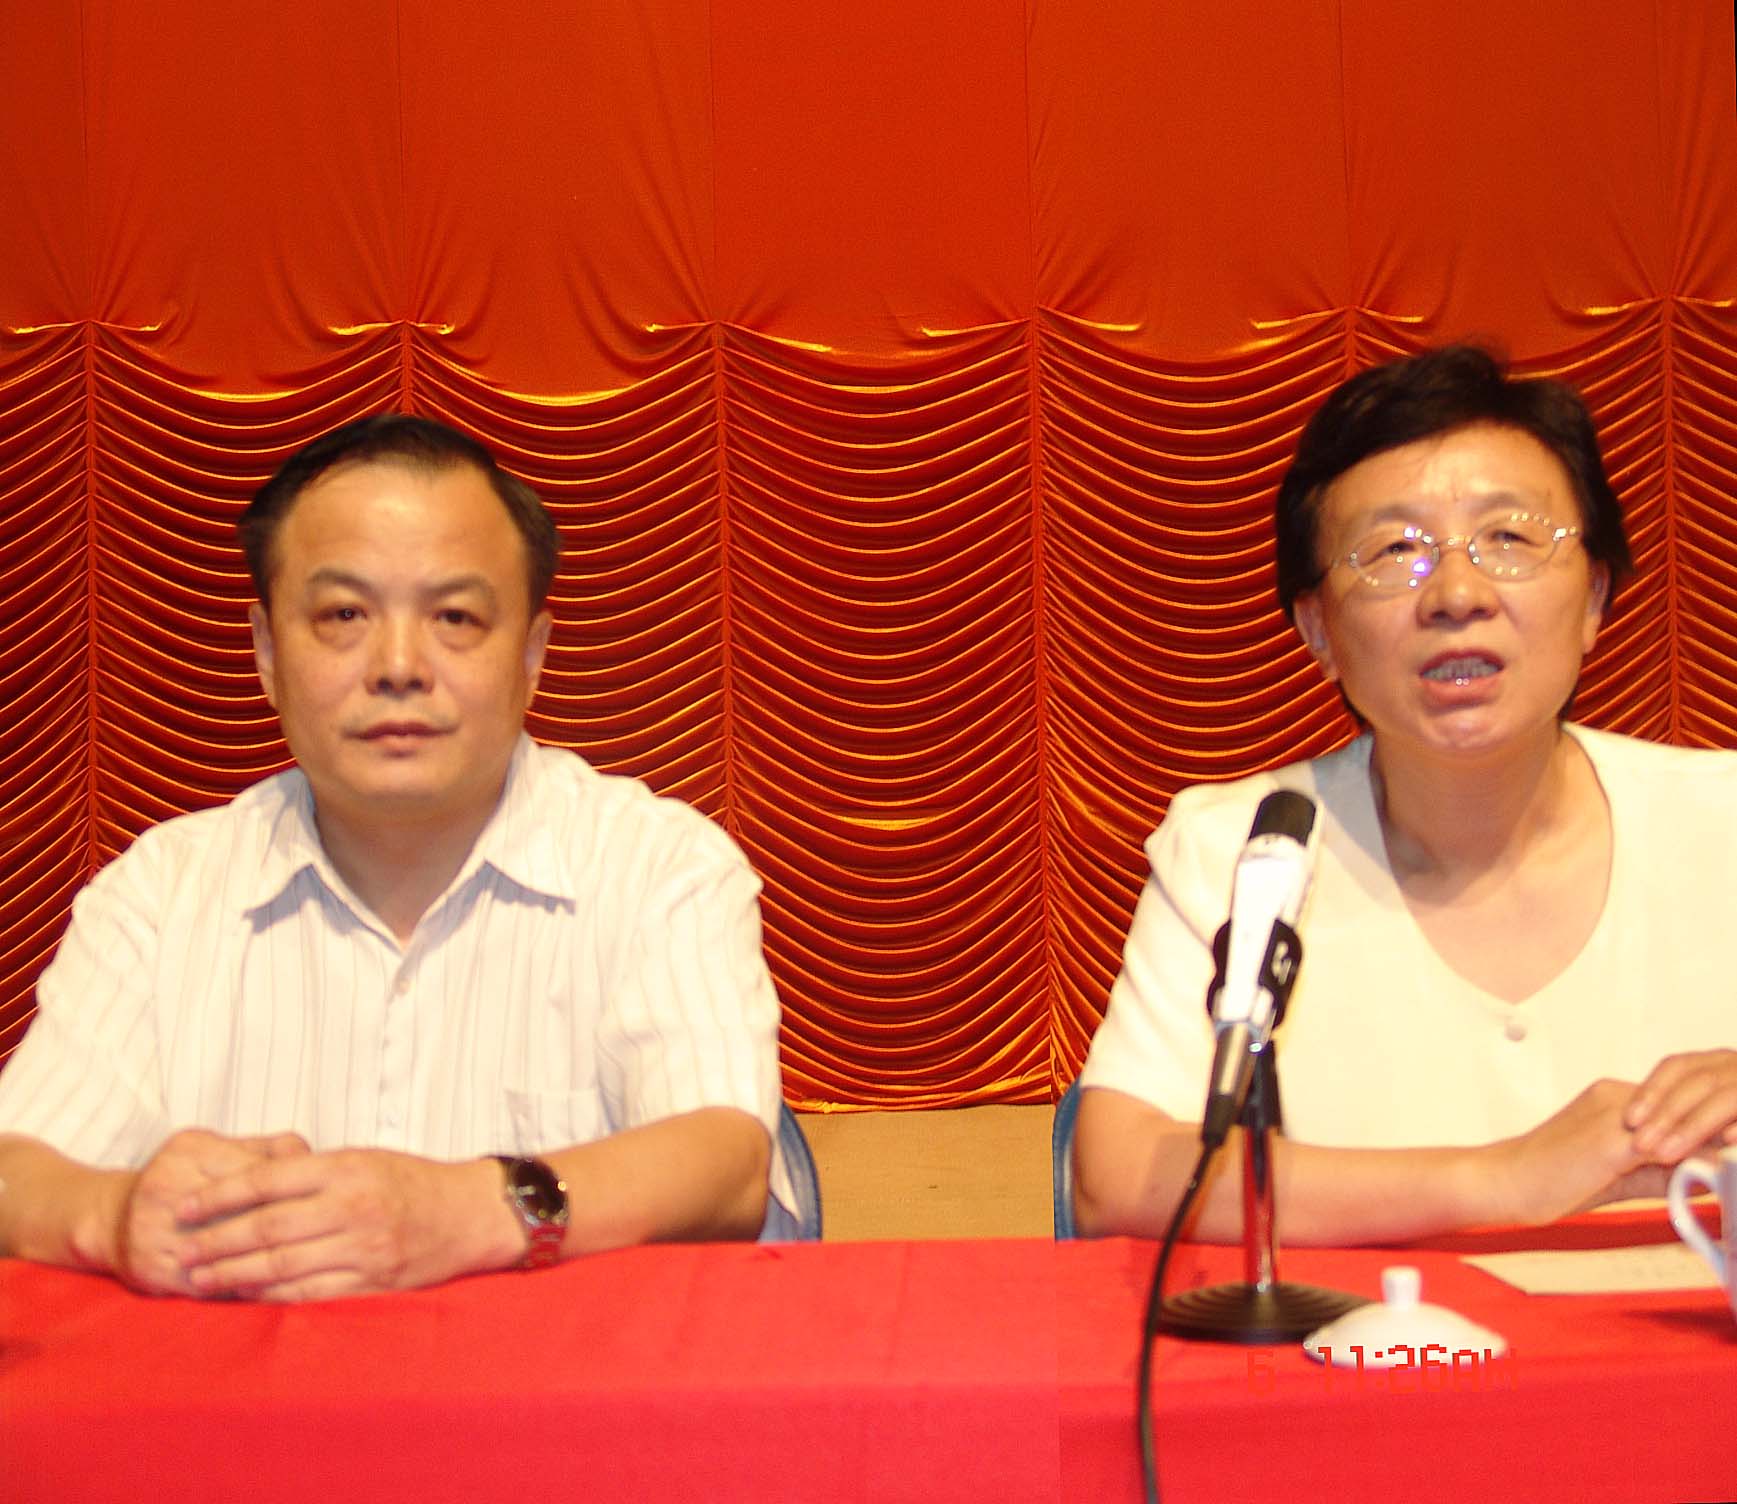 冯江与王晓晔老师在反垄断研讨会合影 